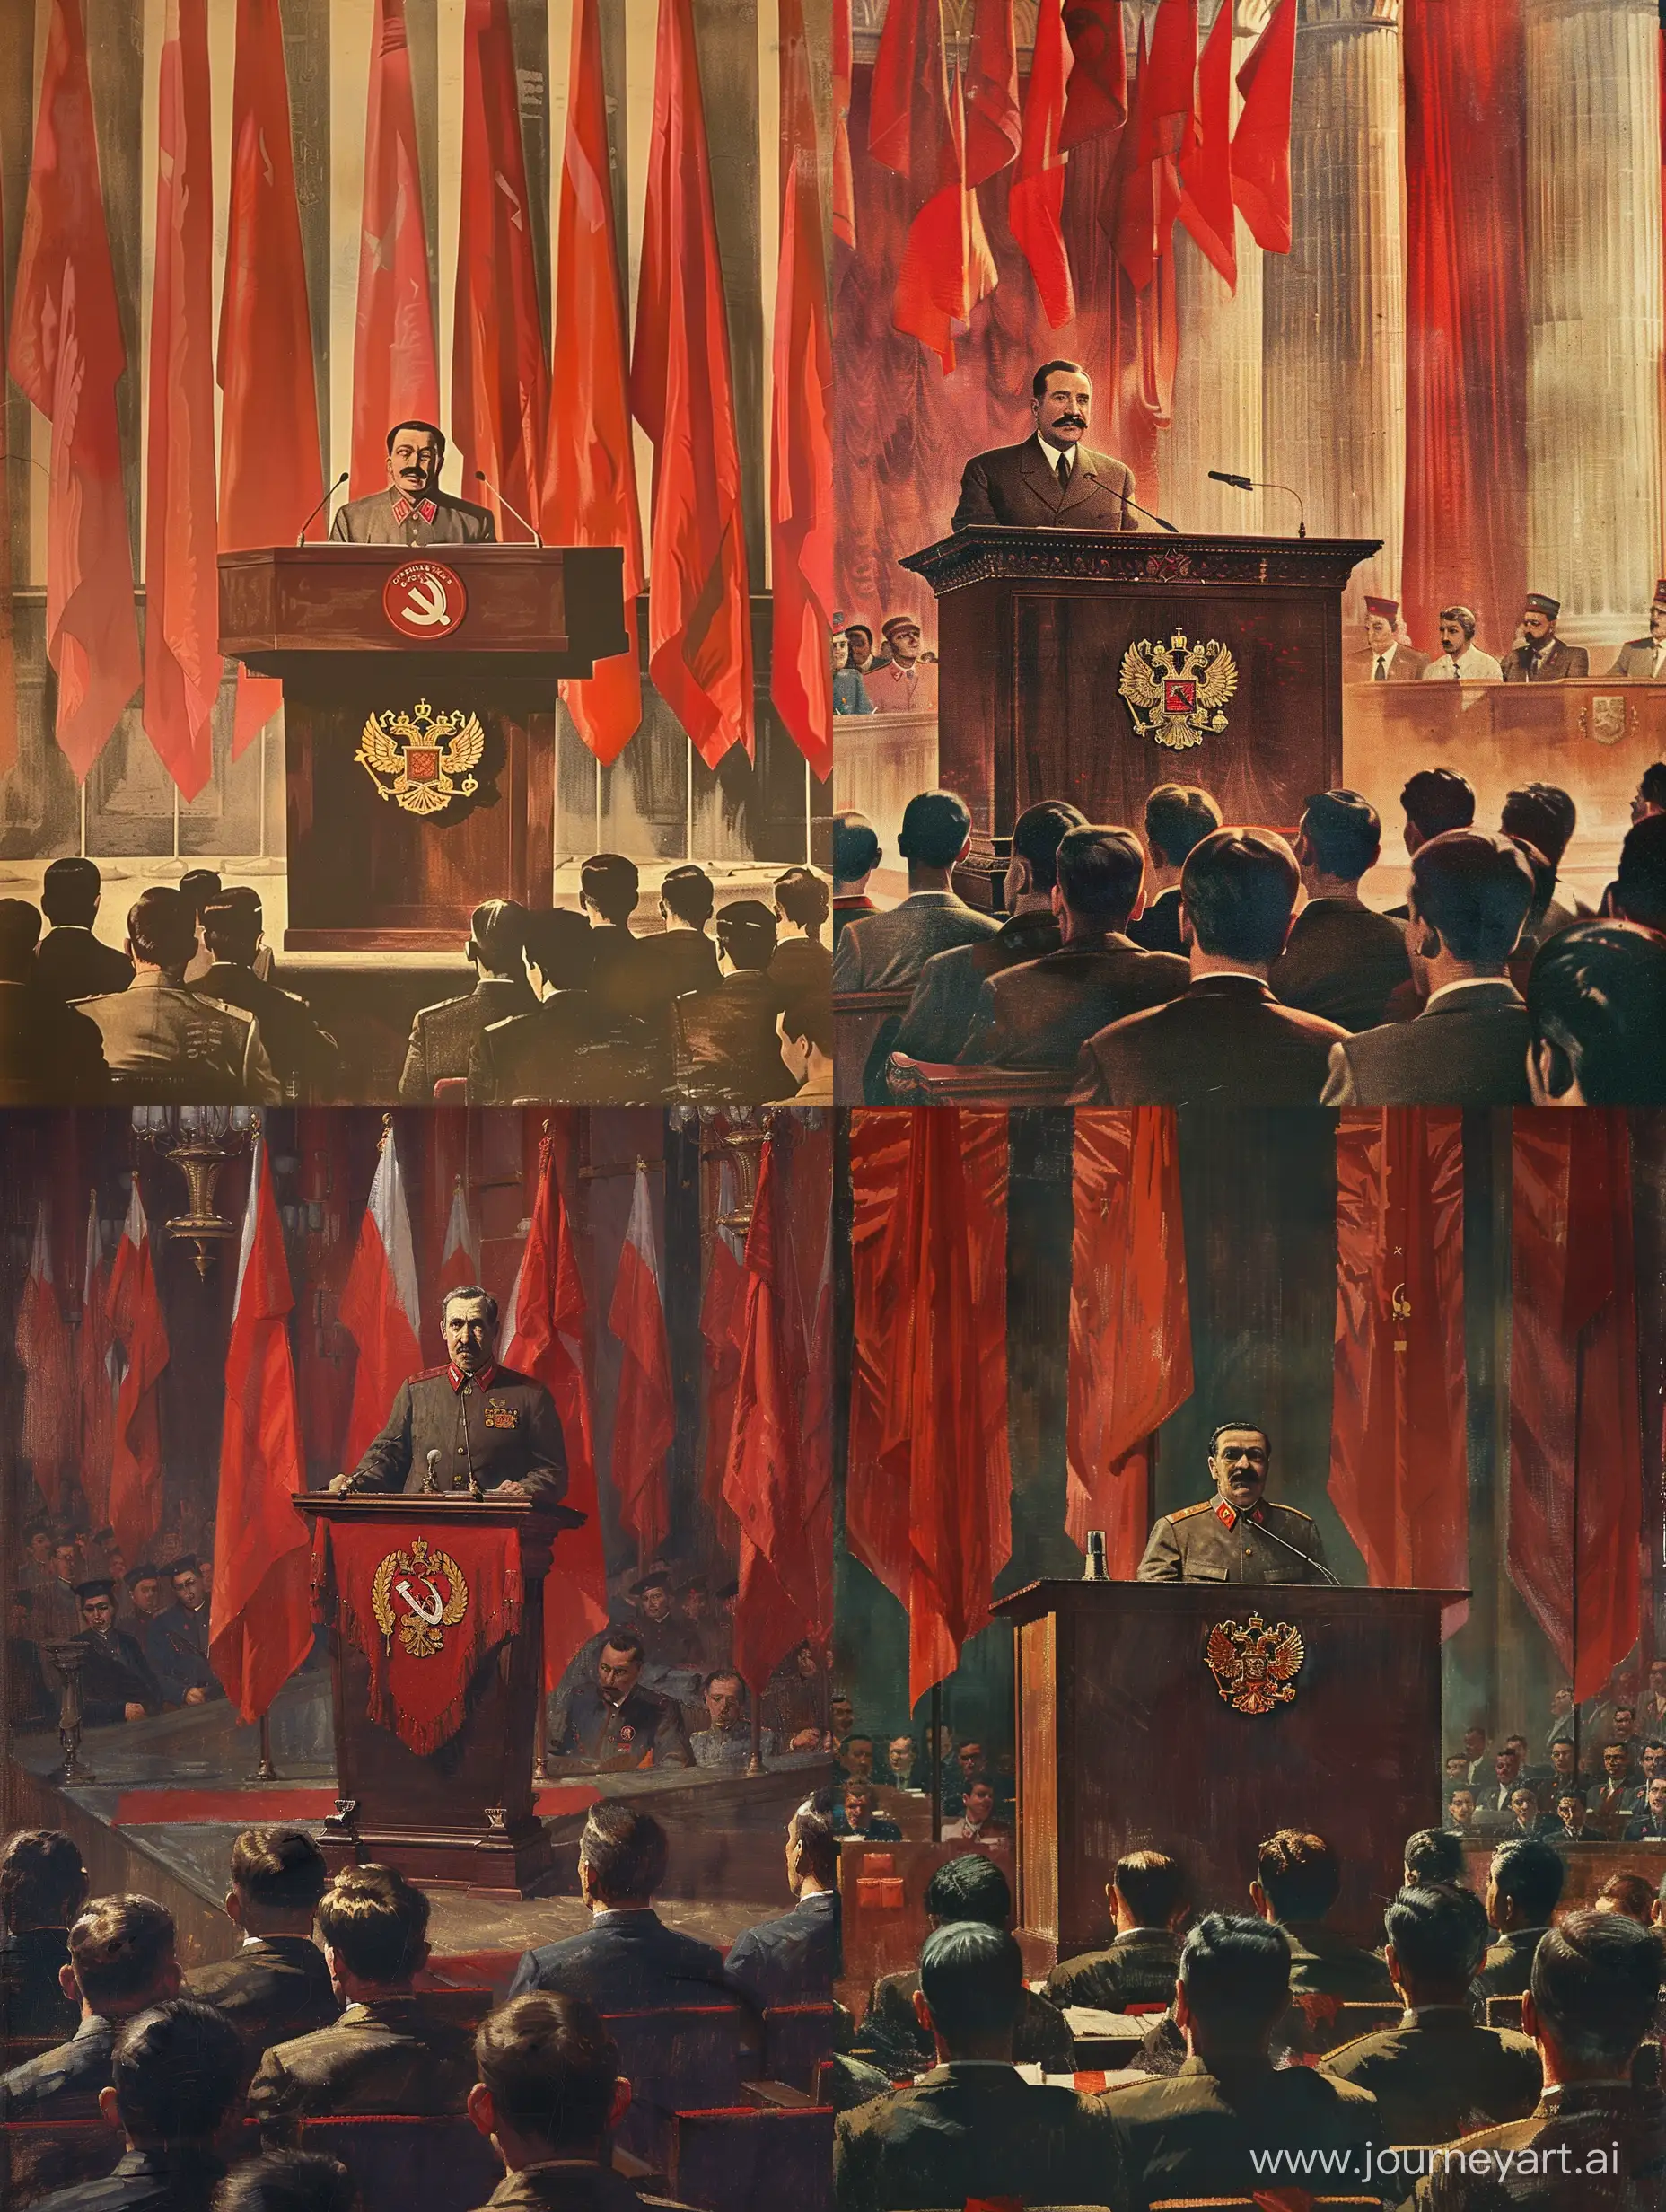 Иосиф Сталин стоит за кафедрой с эмблемой герба СССР, и читает что то на этой кафедре, по всему залу заседания висят красные флаги, слушатели сидят впереди Сталина